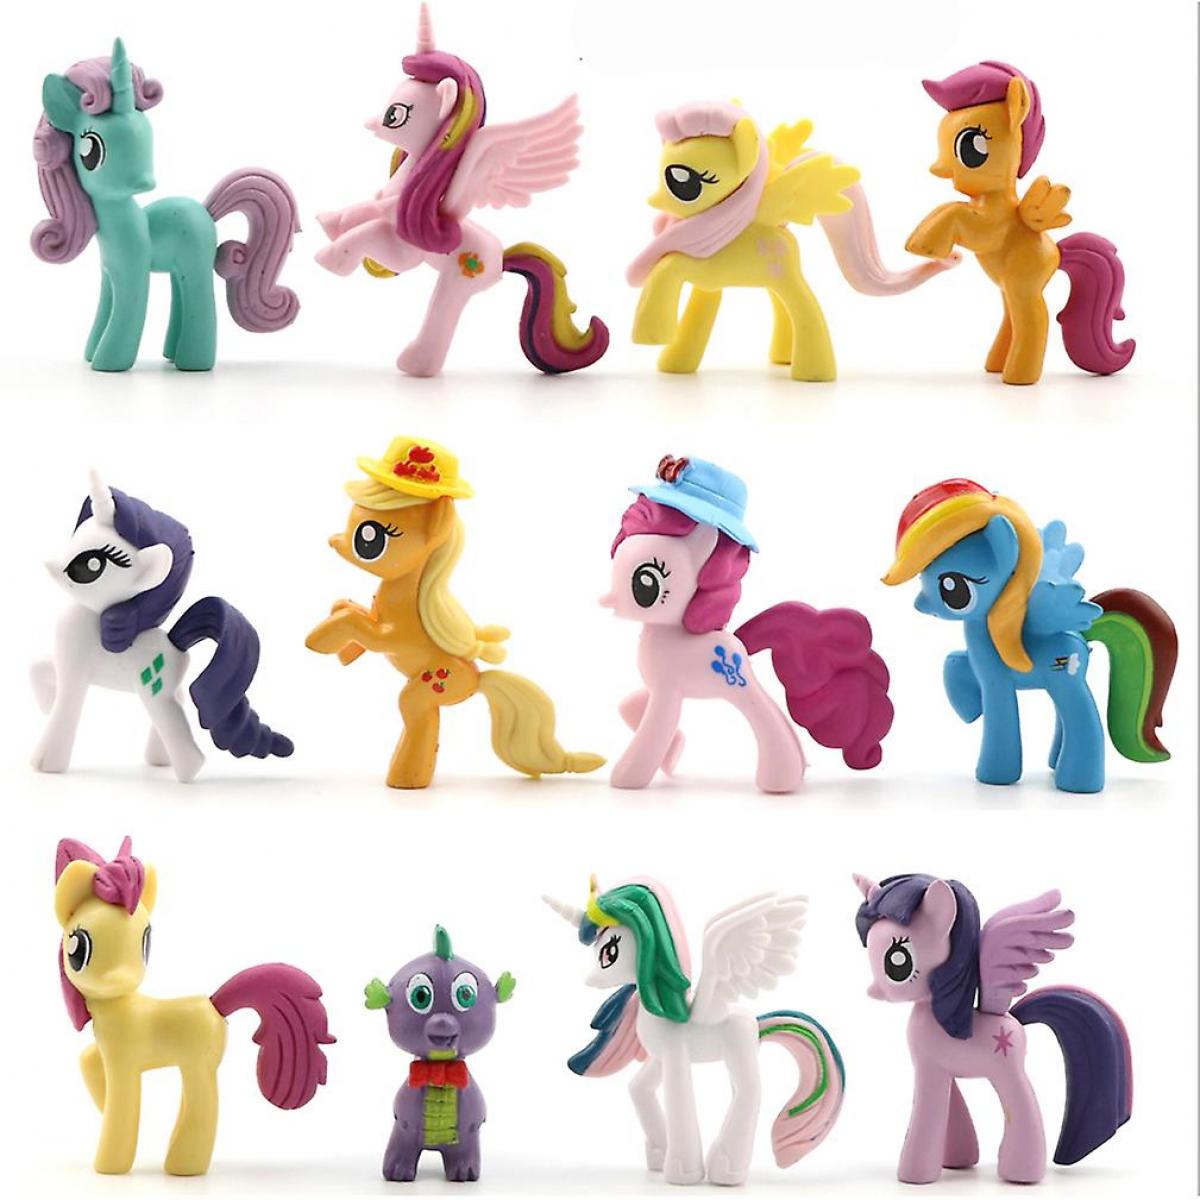 Mangas Universal 12 poneys poney photo jouets pour fille collection cadeaux